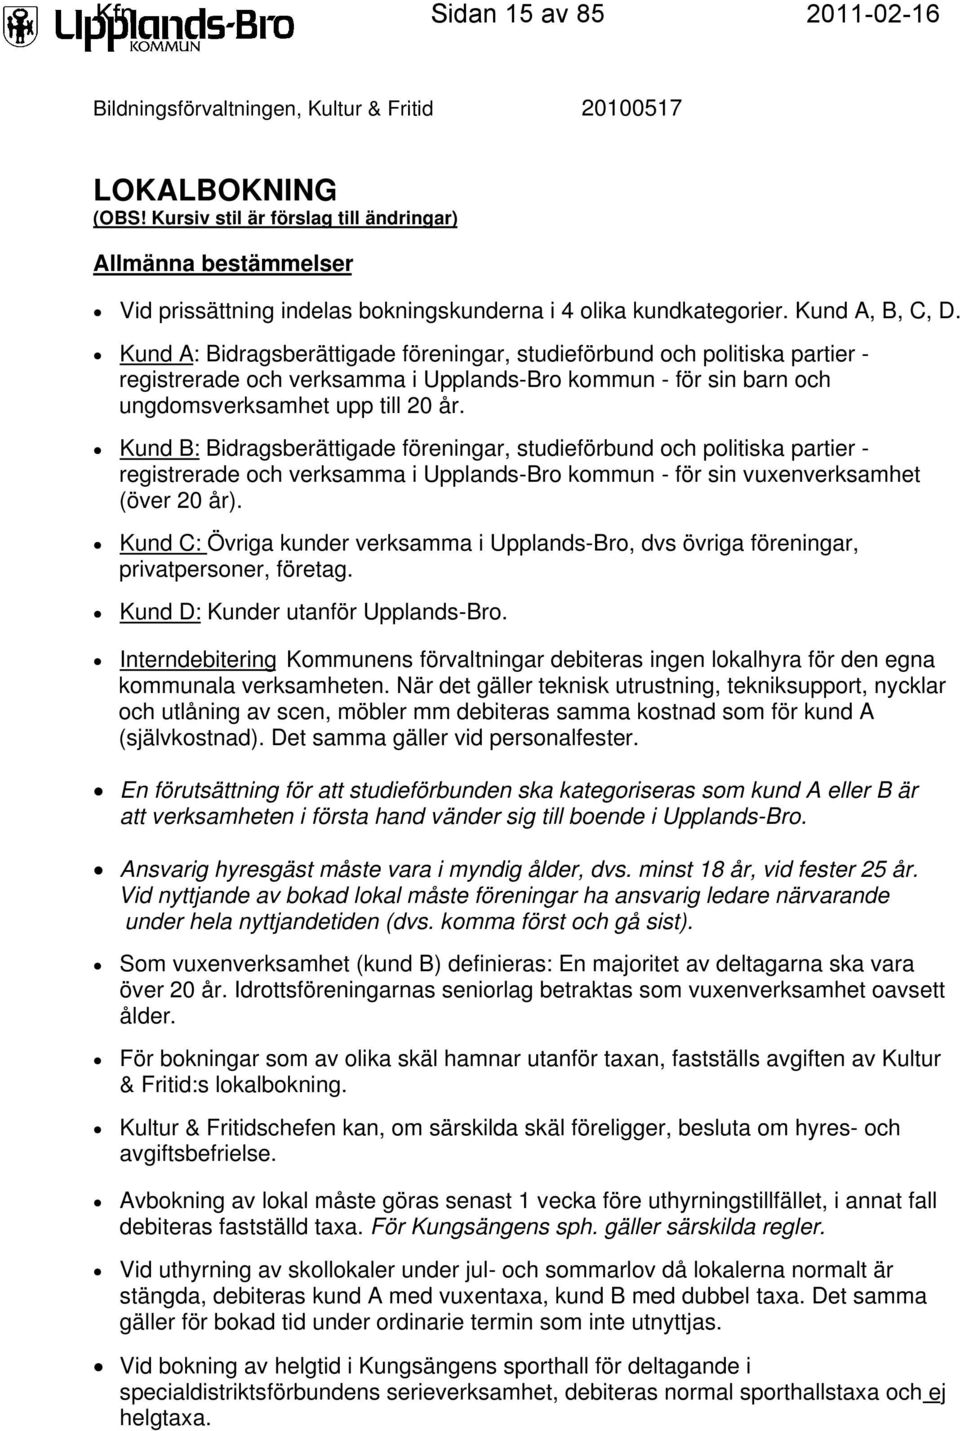 Kund A: Bidragsberättigade föreningar, studieförbund och politiska partier - registrerade och verksamma i Upplands-Bro kommun - för sin barn och ungdomsverksamhet upp till 20 år.